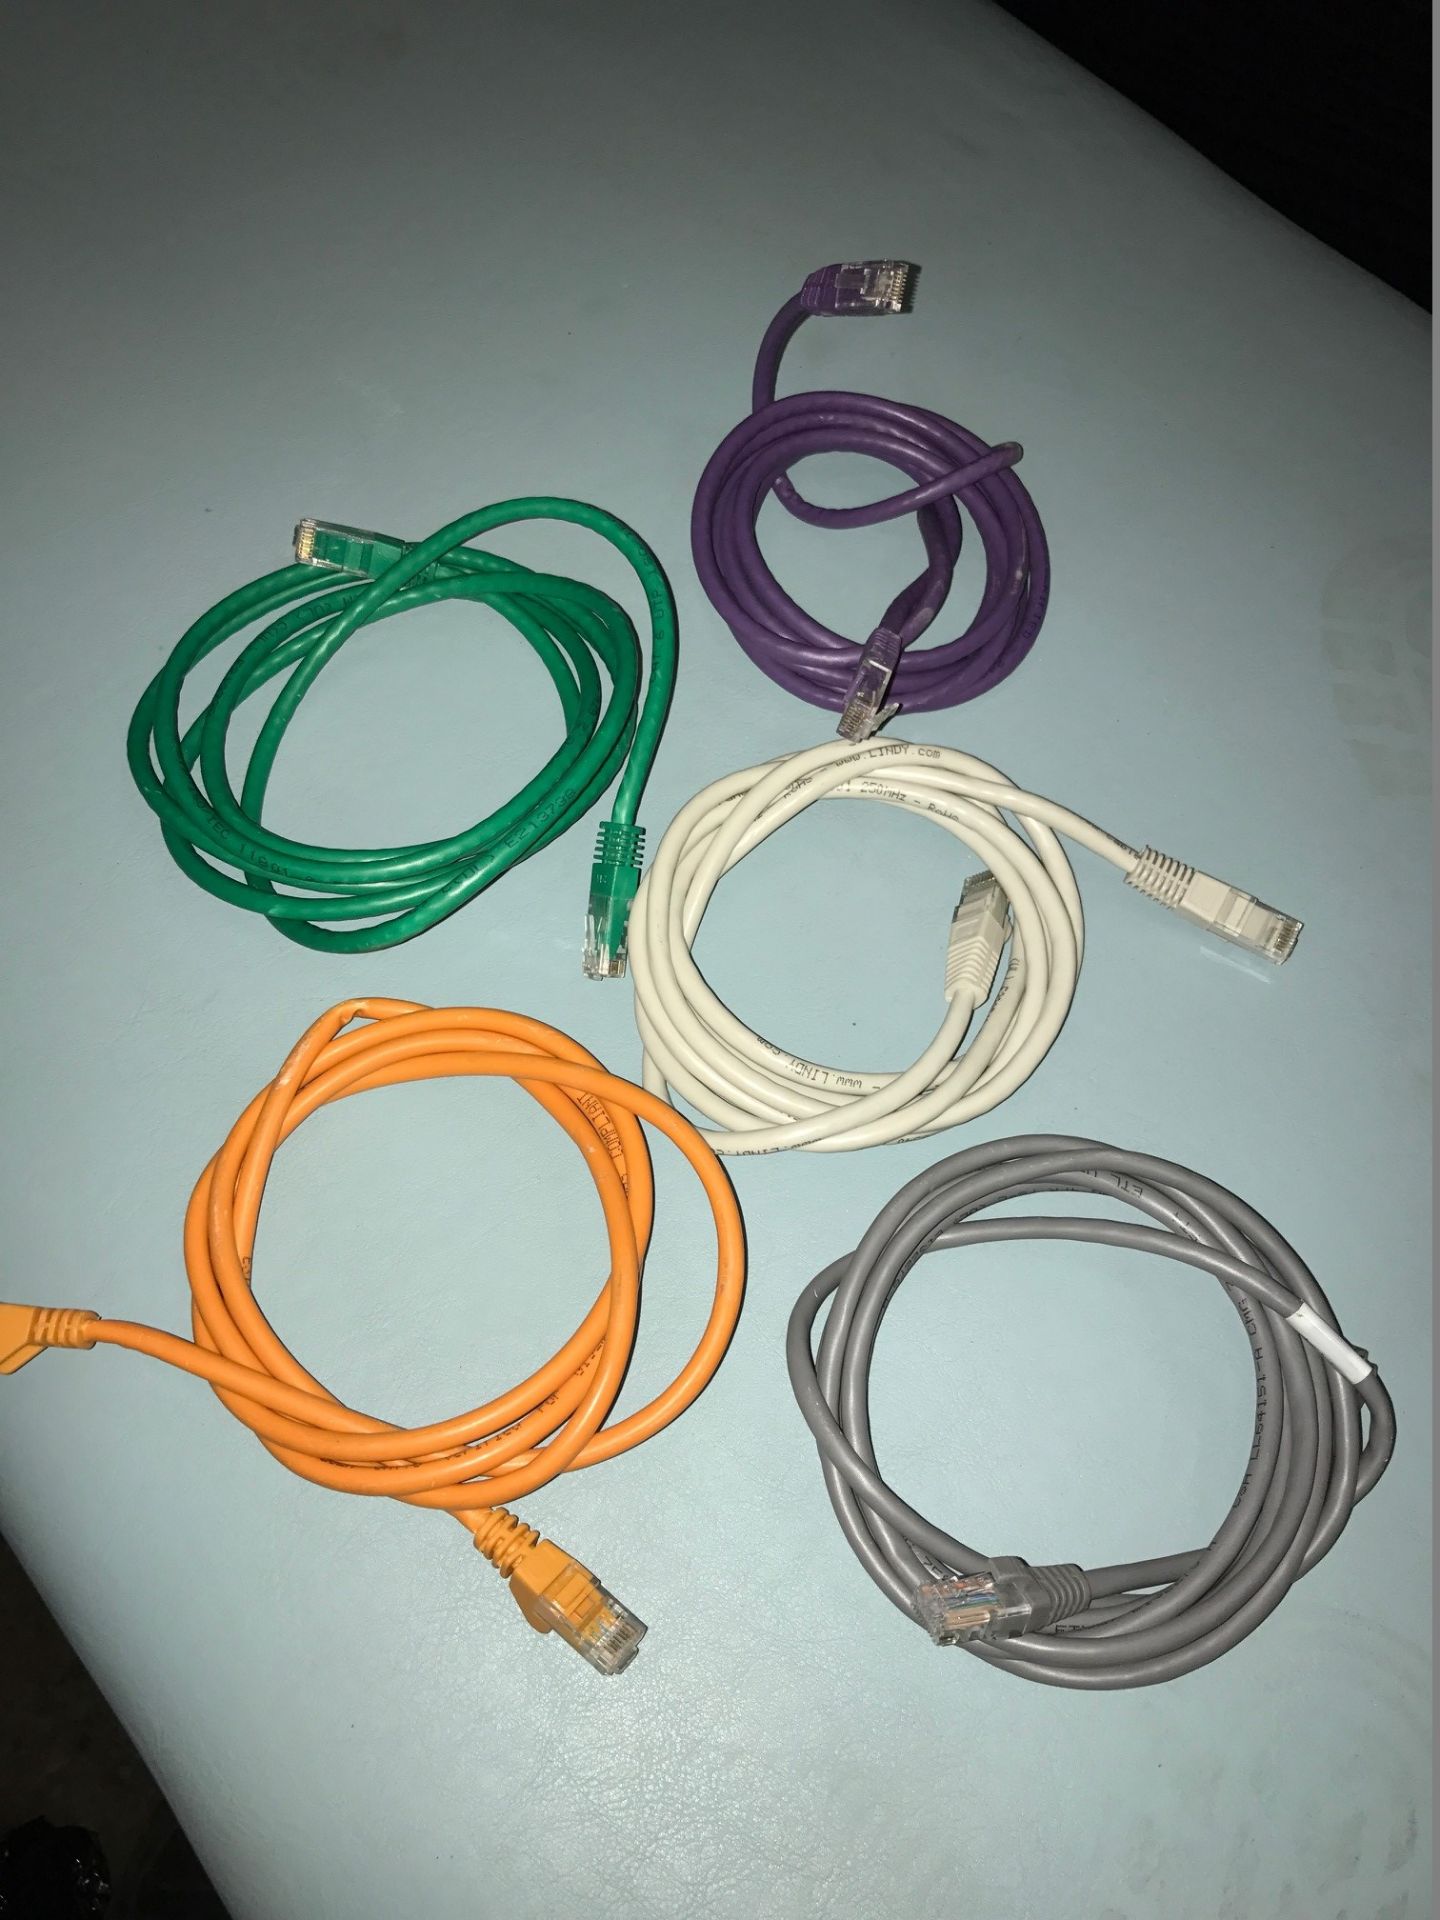 20 x Ethernet Cables (Various Colours/Lengths)